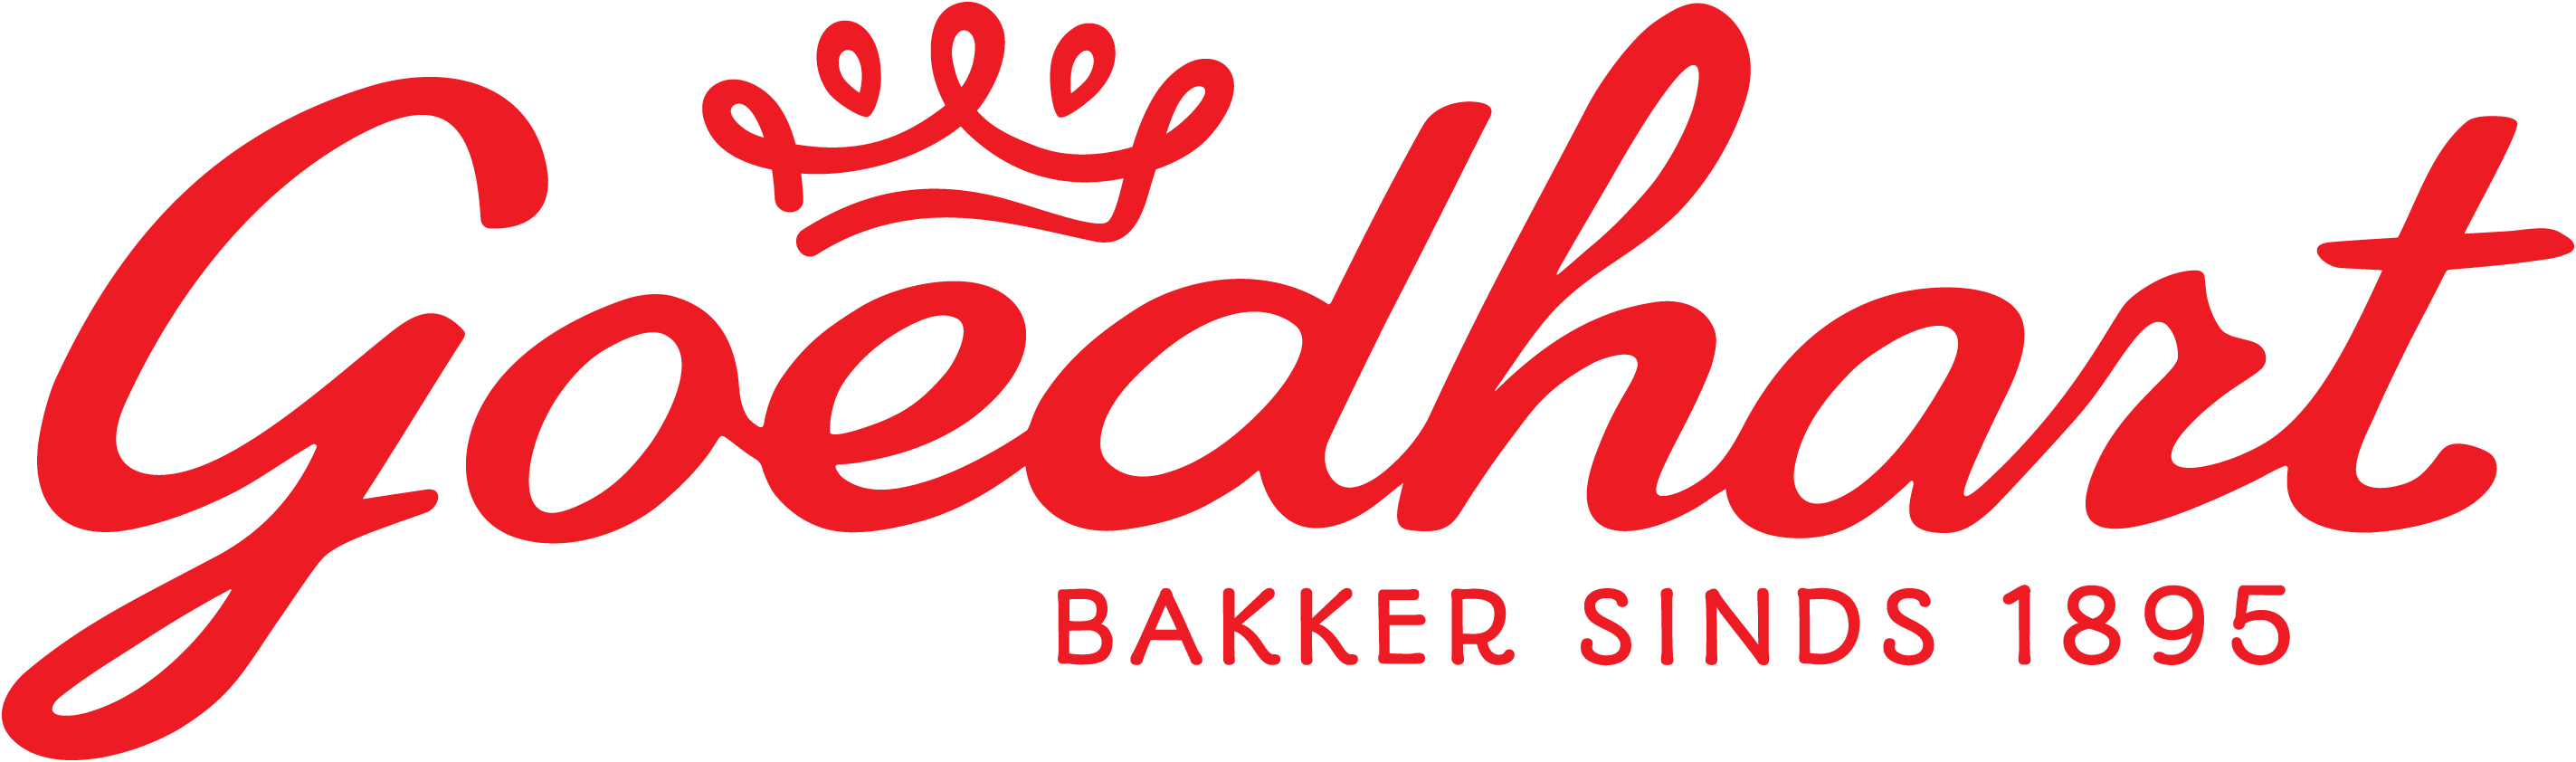 logo bakker goedhart